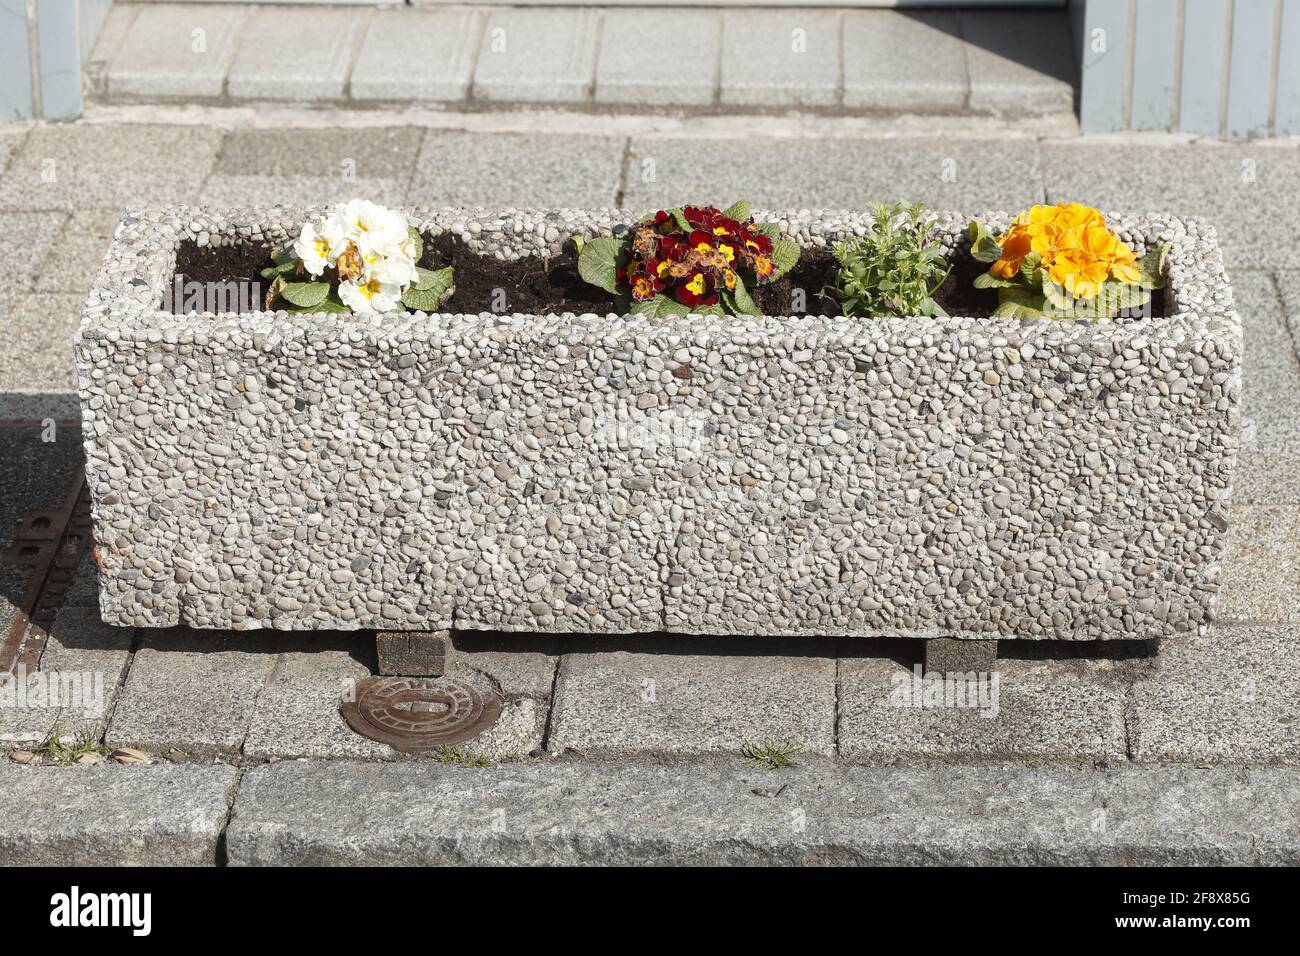 Beton-Blumenkasten mit einer Reihe von Blumen Stockfotografie - Alamy